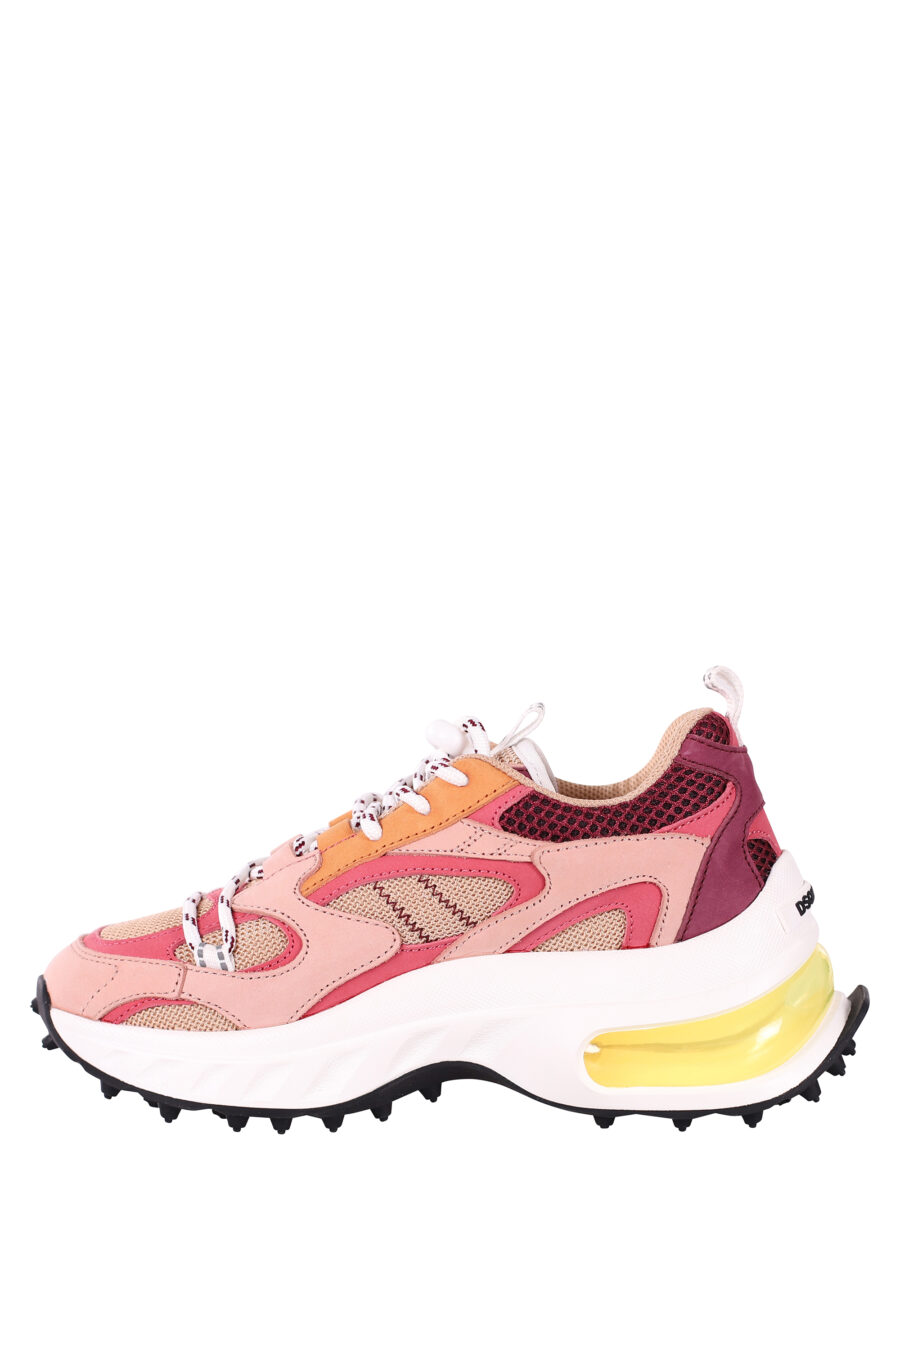 Zapatillas multicolor rosa con camara de aire amarilla - IMG 5835